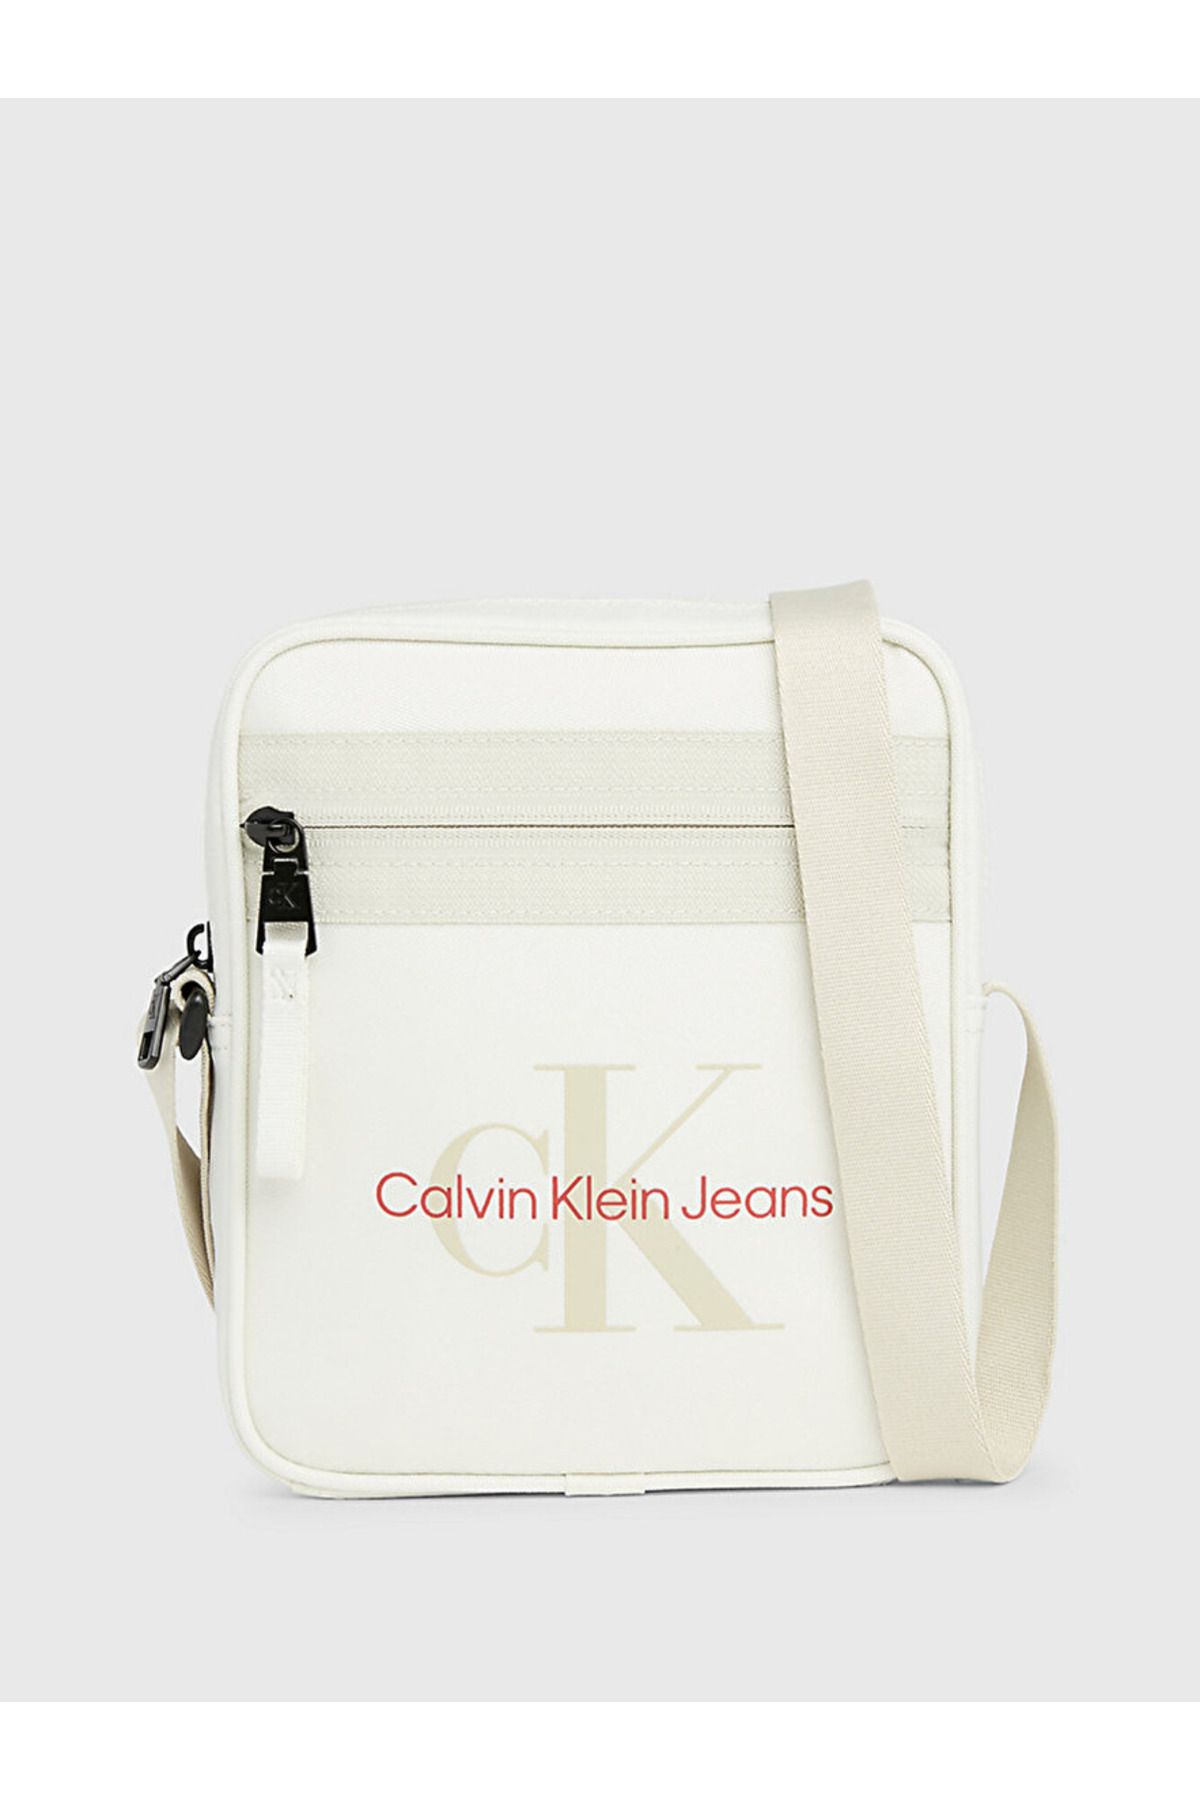 Calvin Klein Reporter Bag